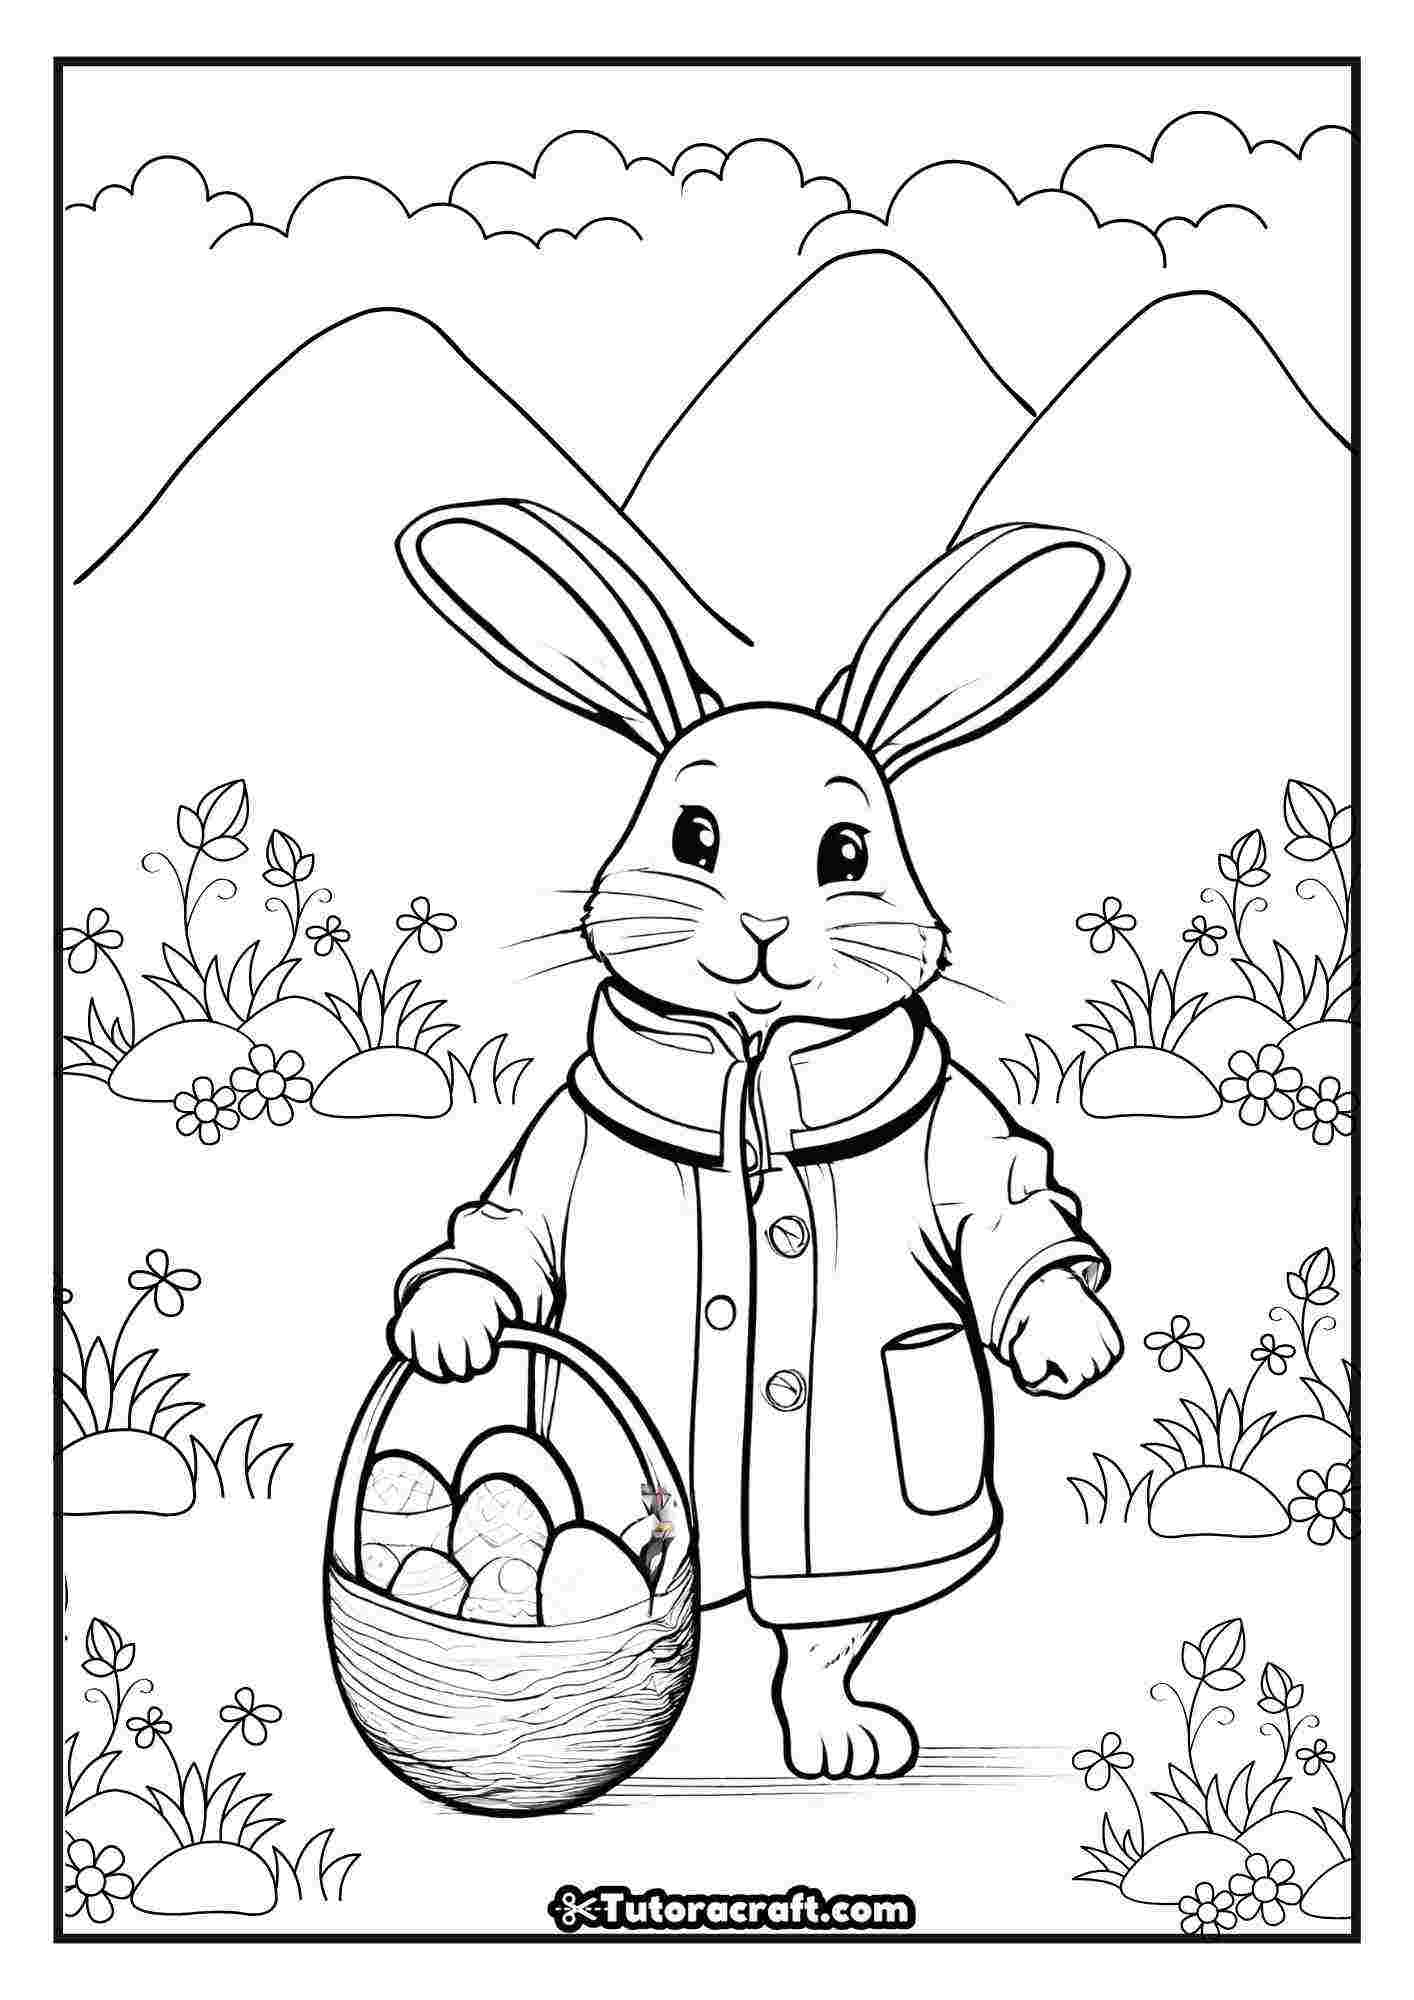 Desenho de páscoa grátis para colorir coelho de casaco carregando cestinha de ovos de páscoa